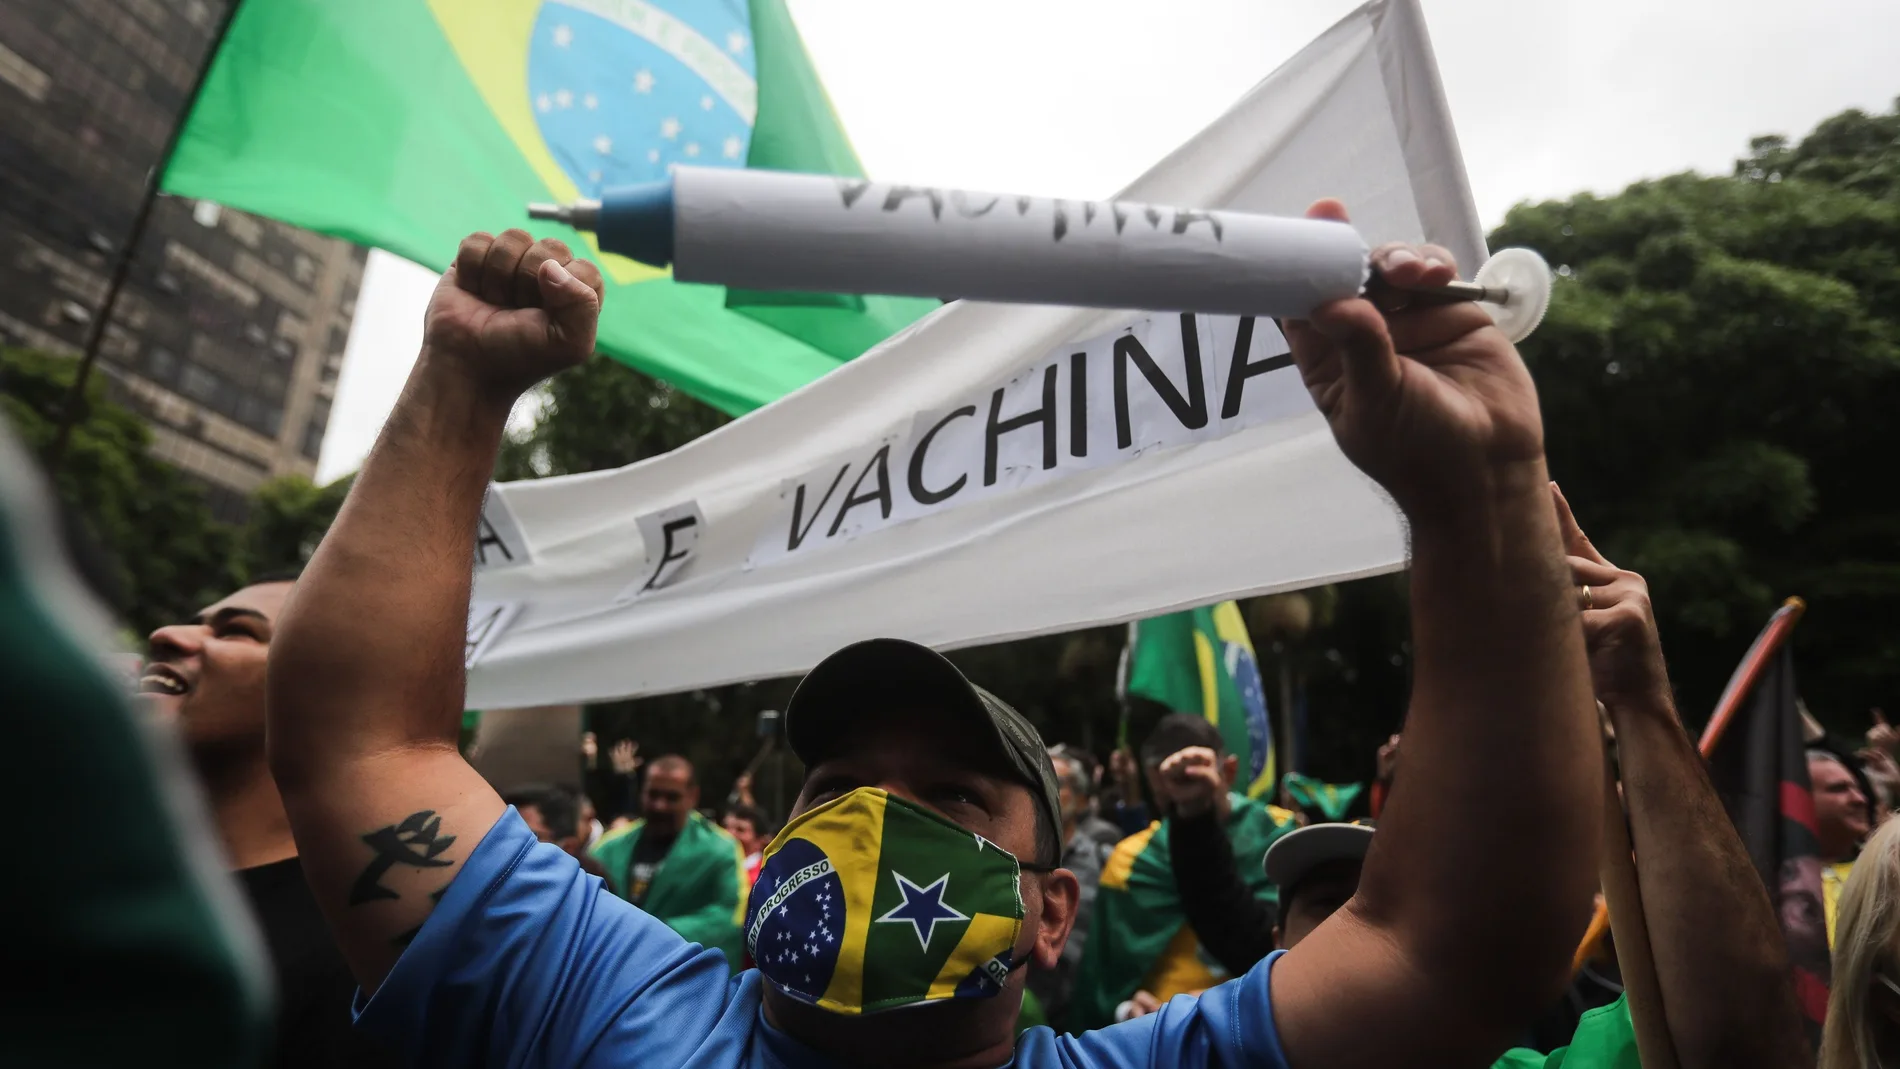 -FOTODELDÍA- AME4968. SAO PAULO (BRASIL), 01/11/2020.- Seguidores del presidente de Brasil Jair Bolsonaro participan en un manifestación en contra de la posible obligatoriedad de la vacuna contra el coronavirus hoy, en la avenida Paulista en Sao Paulo )Brasil). EFE/FERNANDO BIZERRA